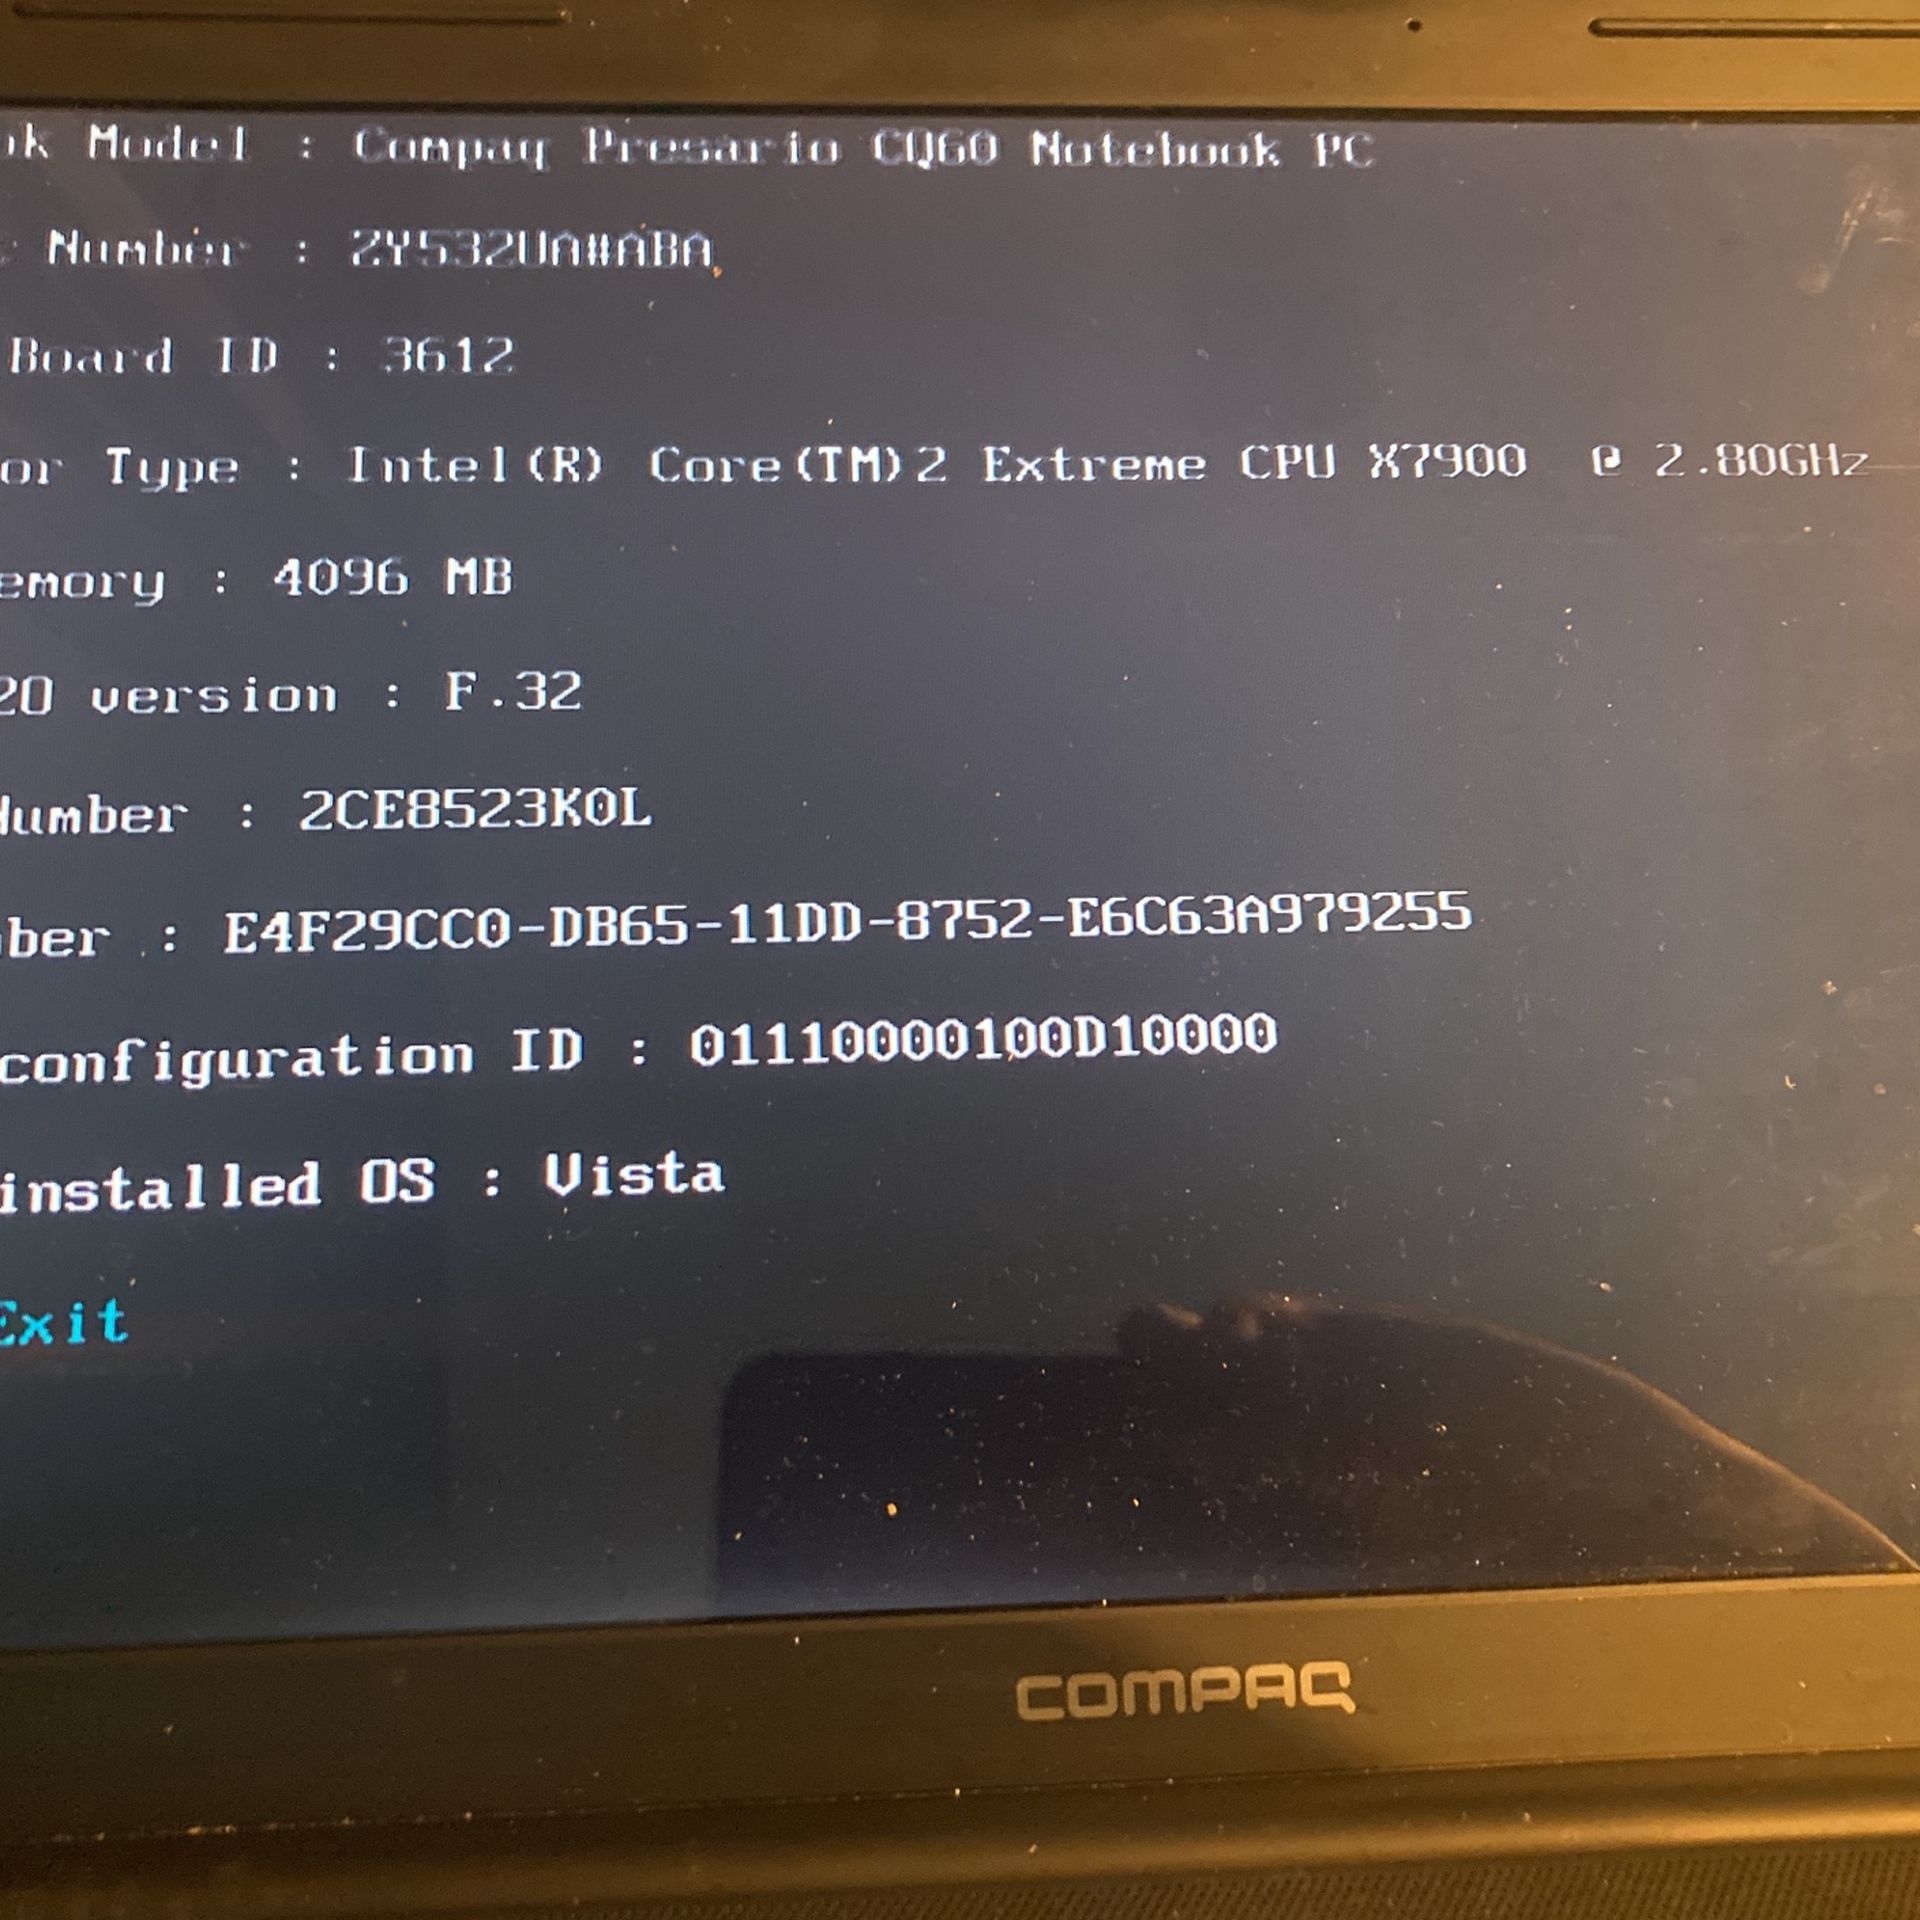 Compaq Presario CQ-60 216 DX Laptop